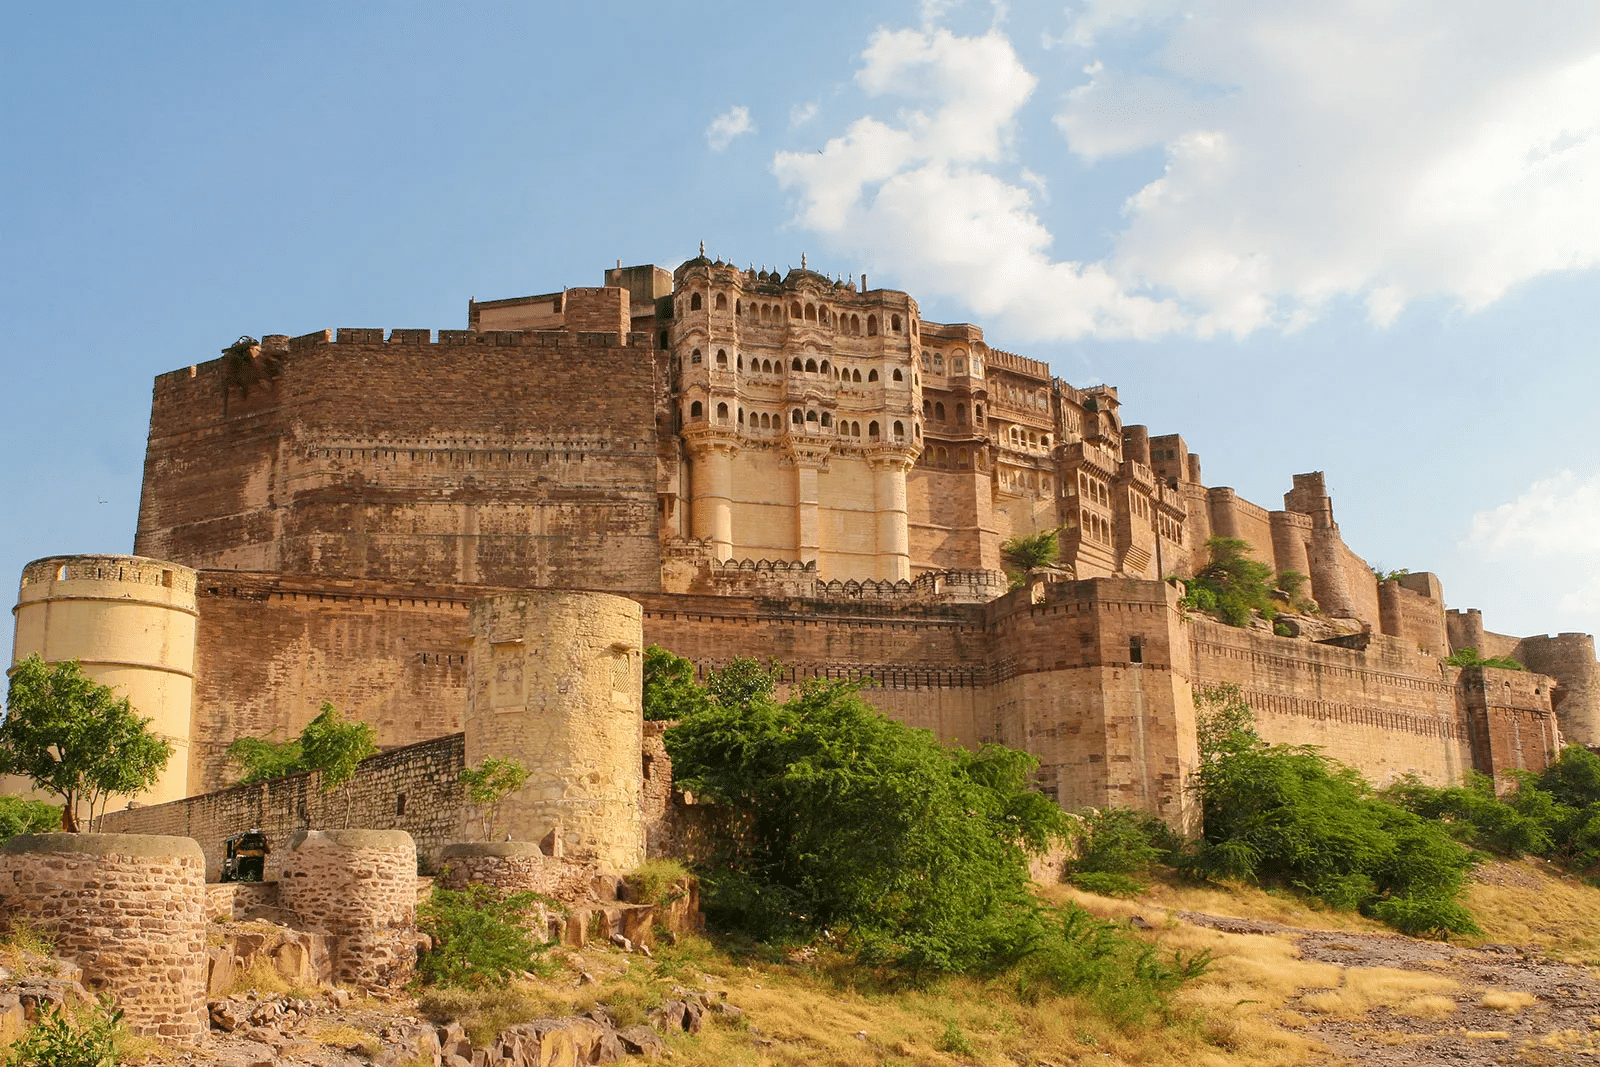 Mehrangarh Fort Overview